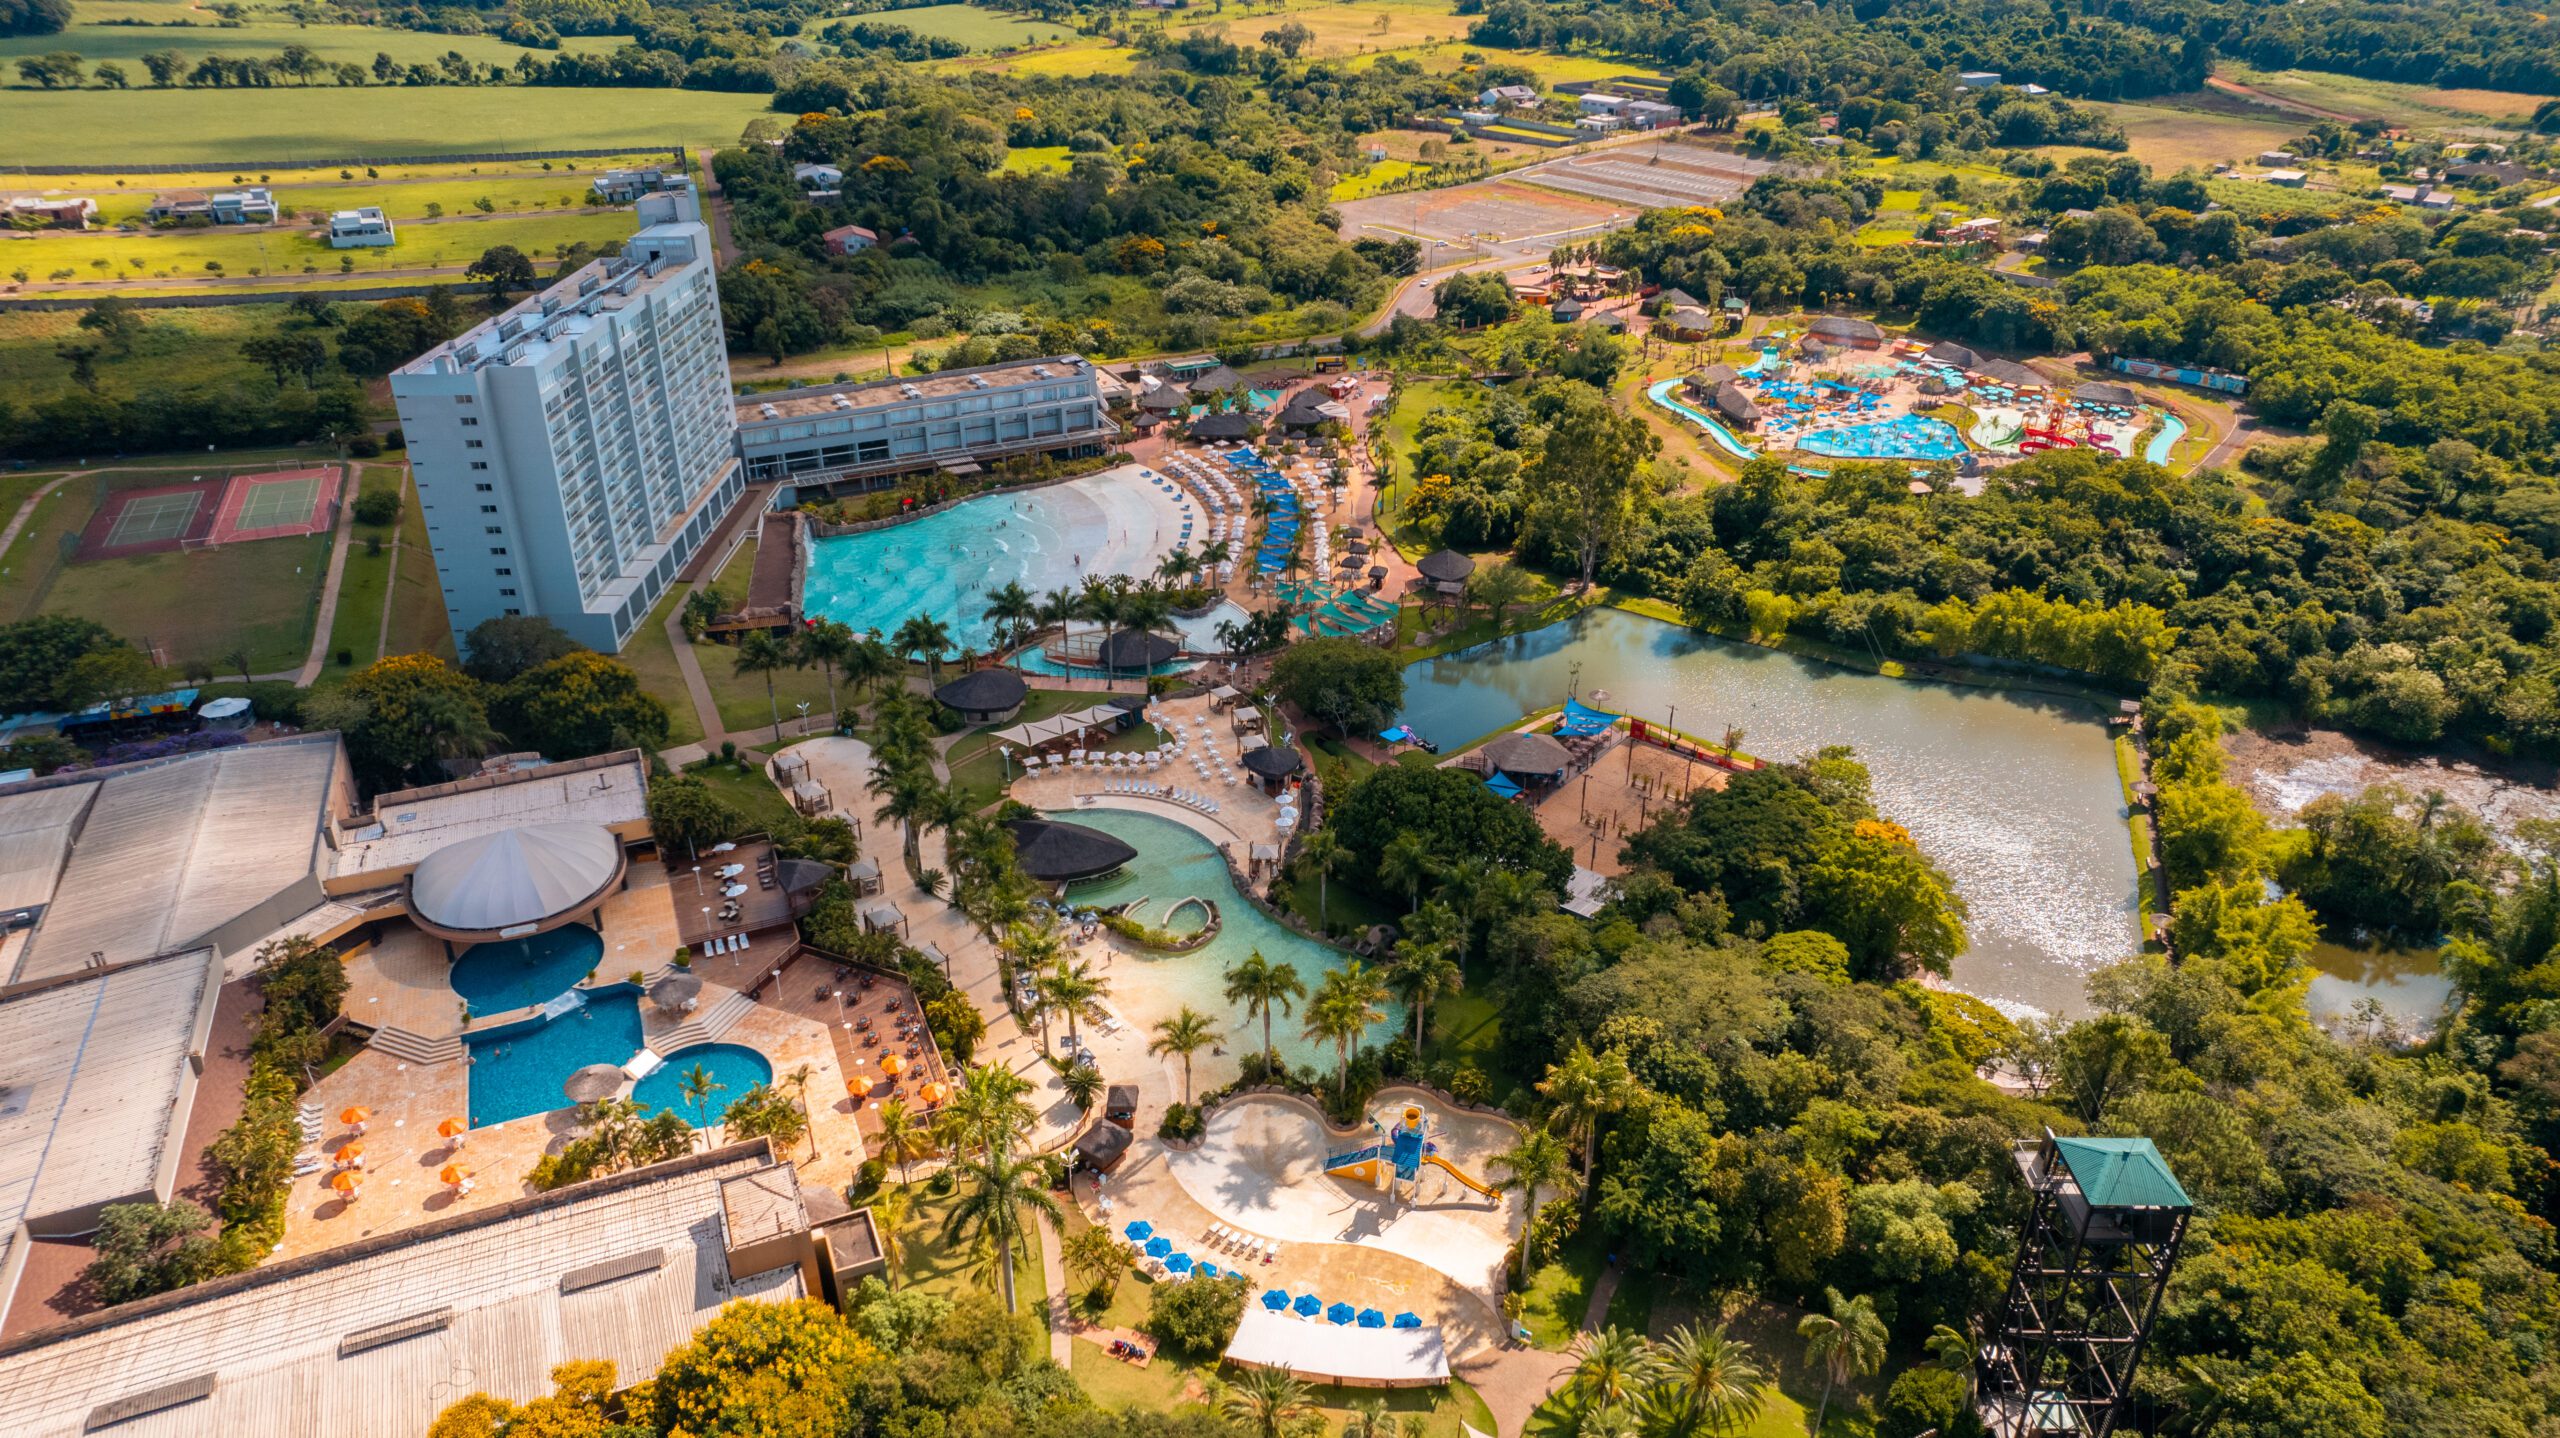 Mabu Thermas Grand Resort bate recordes de crescimento e supera expectativas no segundo semestre do ano